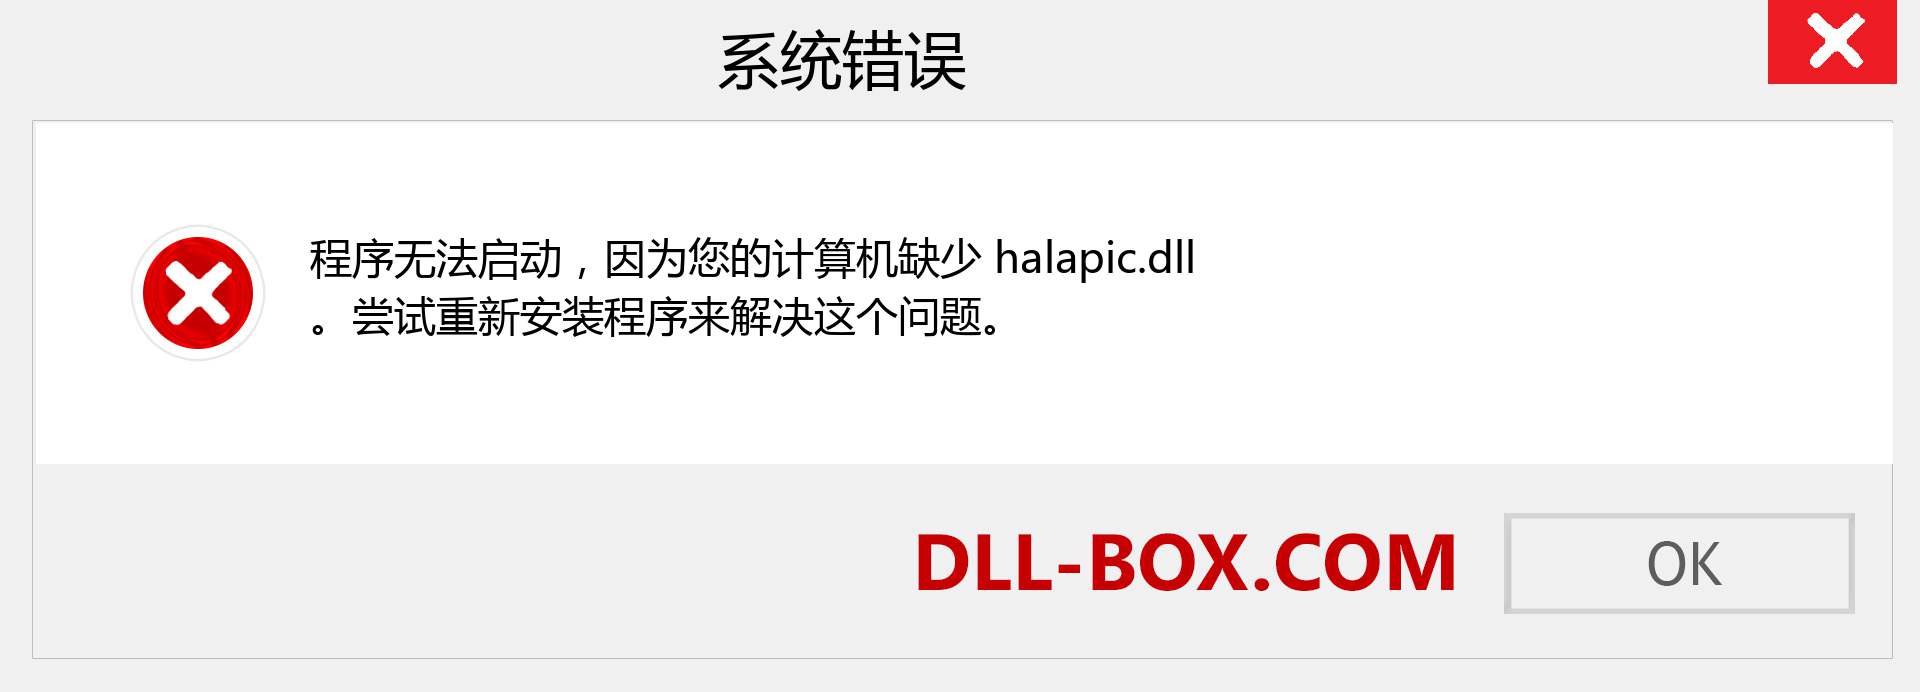 halapic.dll 文件丢失？。 适用于 Windows 7、8、10 的下载 - 修复 Windows、照片、图像上的 halapic dll 丢失错误